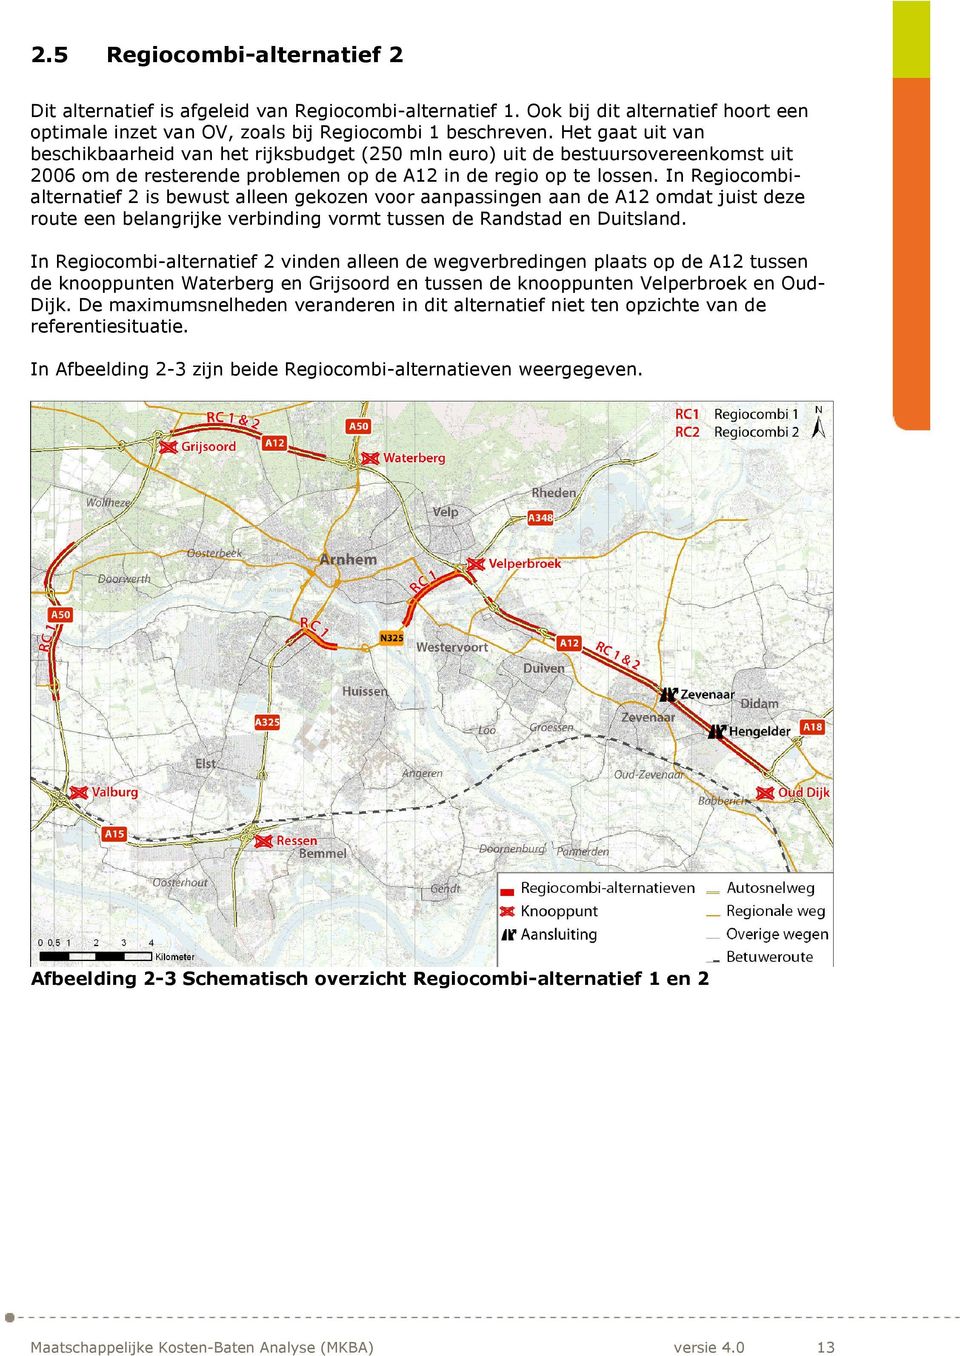 In Regiocombialternatief 2 is bewust alleen gekozen voor aanpassingen aan de A12 omdat juist deze route een belangrijke verbinding vormt tussen de Randstad en Duitsland.